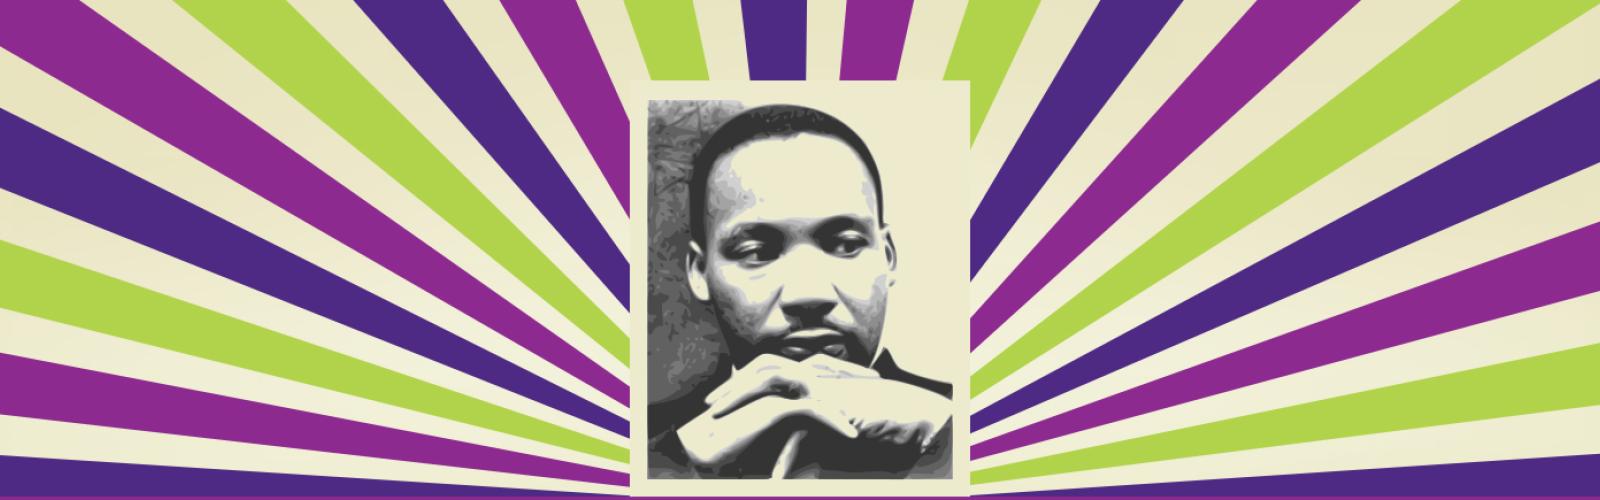 MLK-top-banner.jpeg